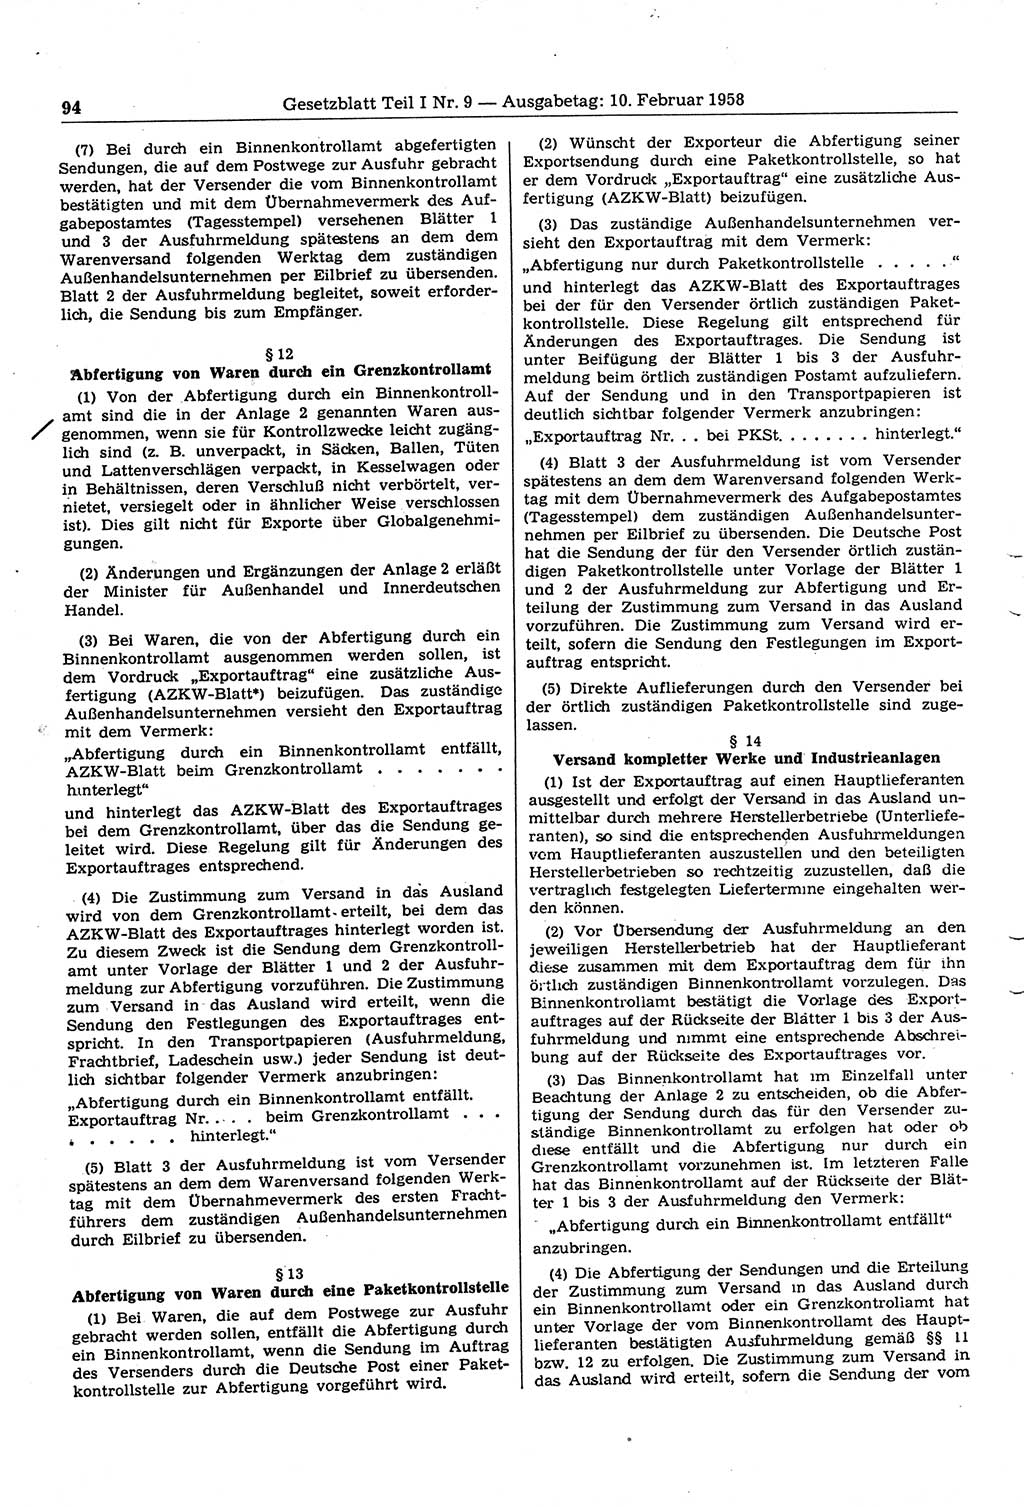 Gesetzblatt (GBl.) der Deutschen Demokratischen Republik (DDR) Teil Ⅰ 1958, Seite 94 (GBl. DDR Ⅰ 1958, S. 94)